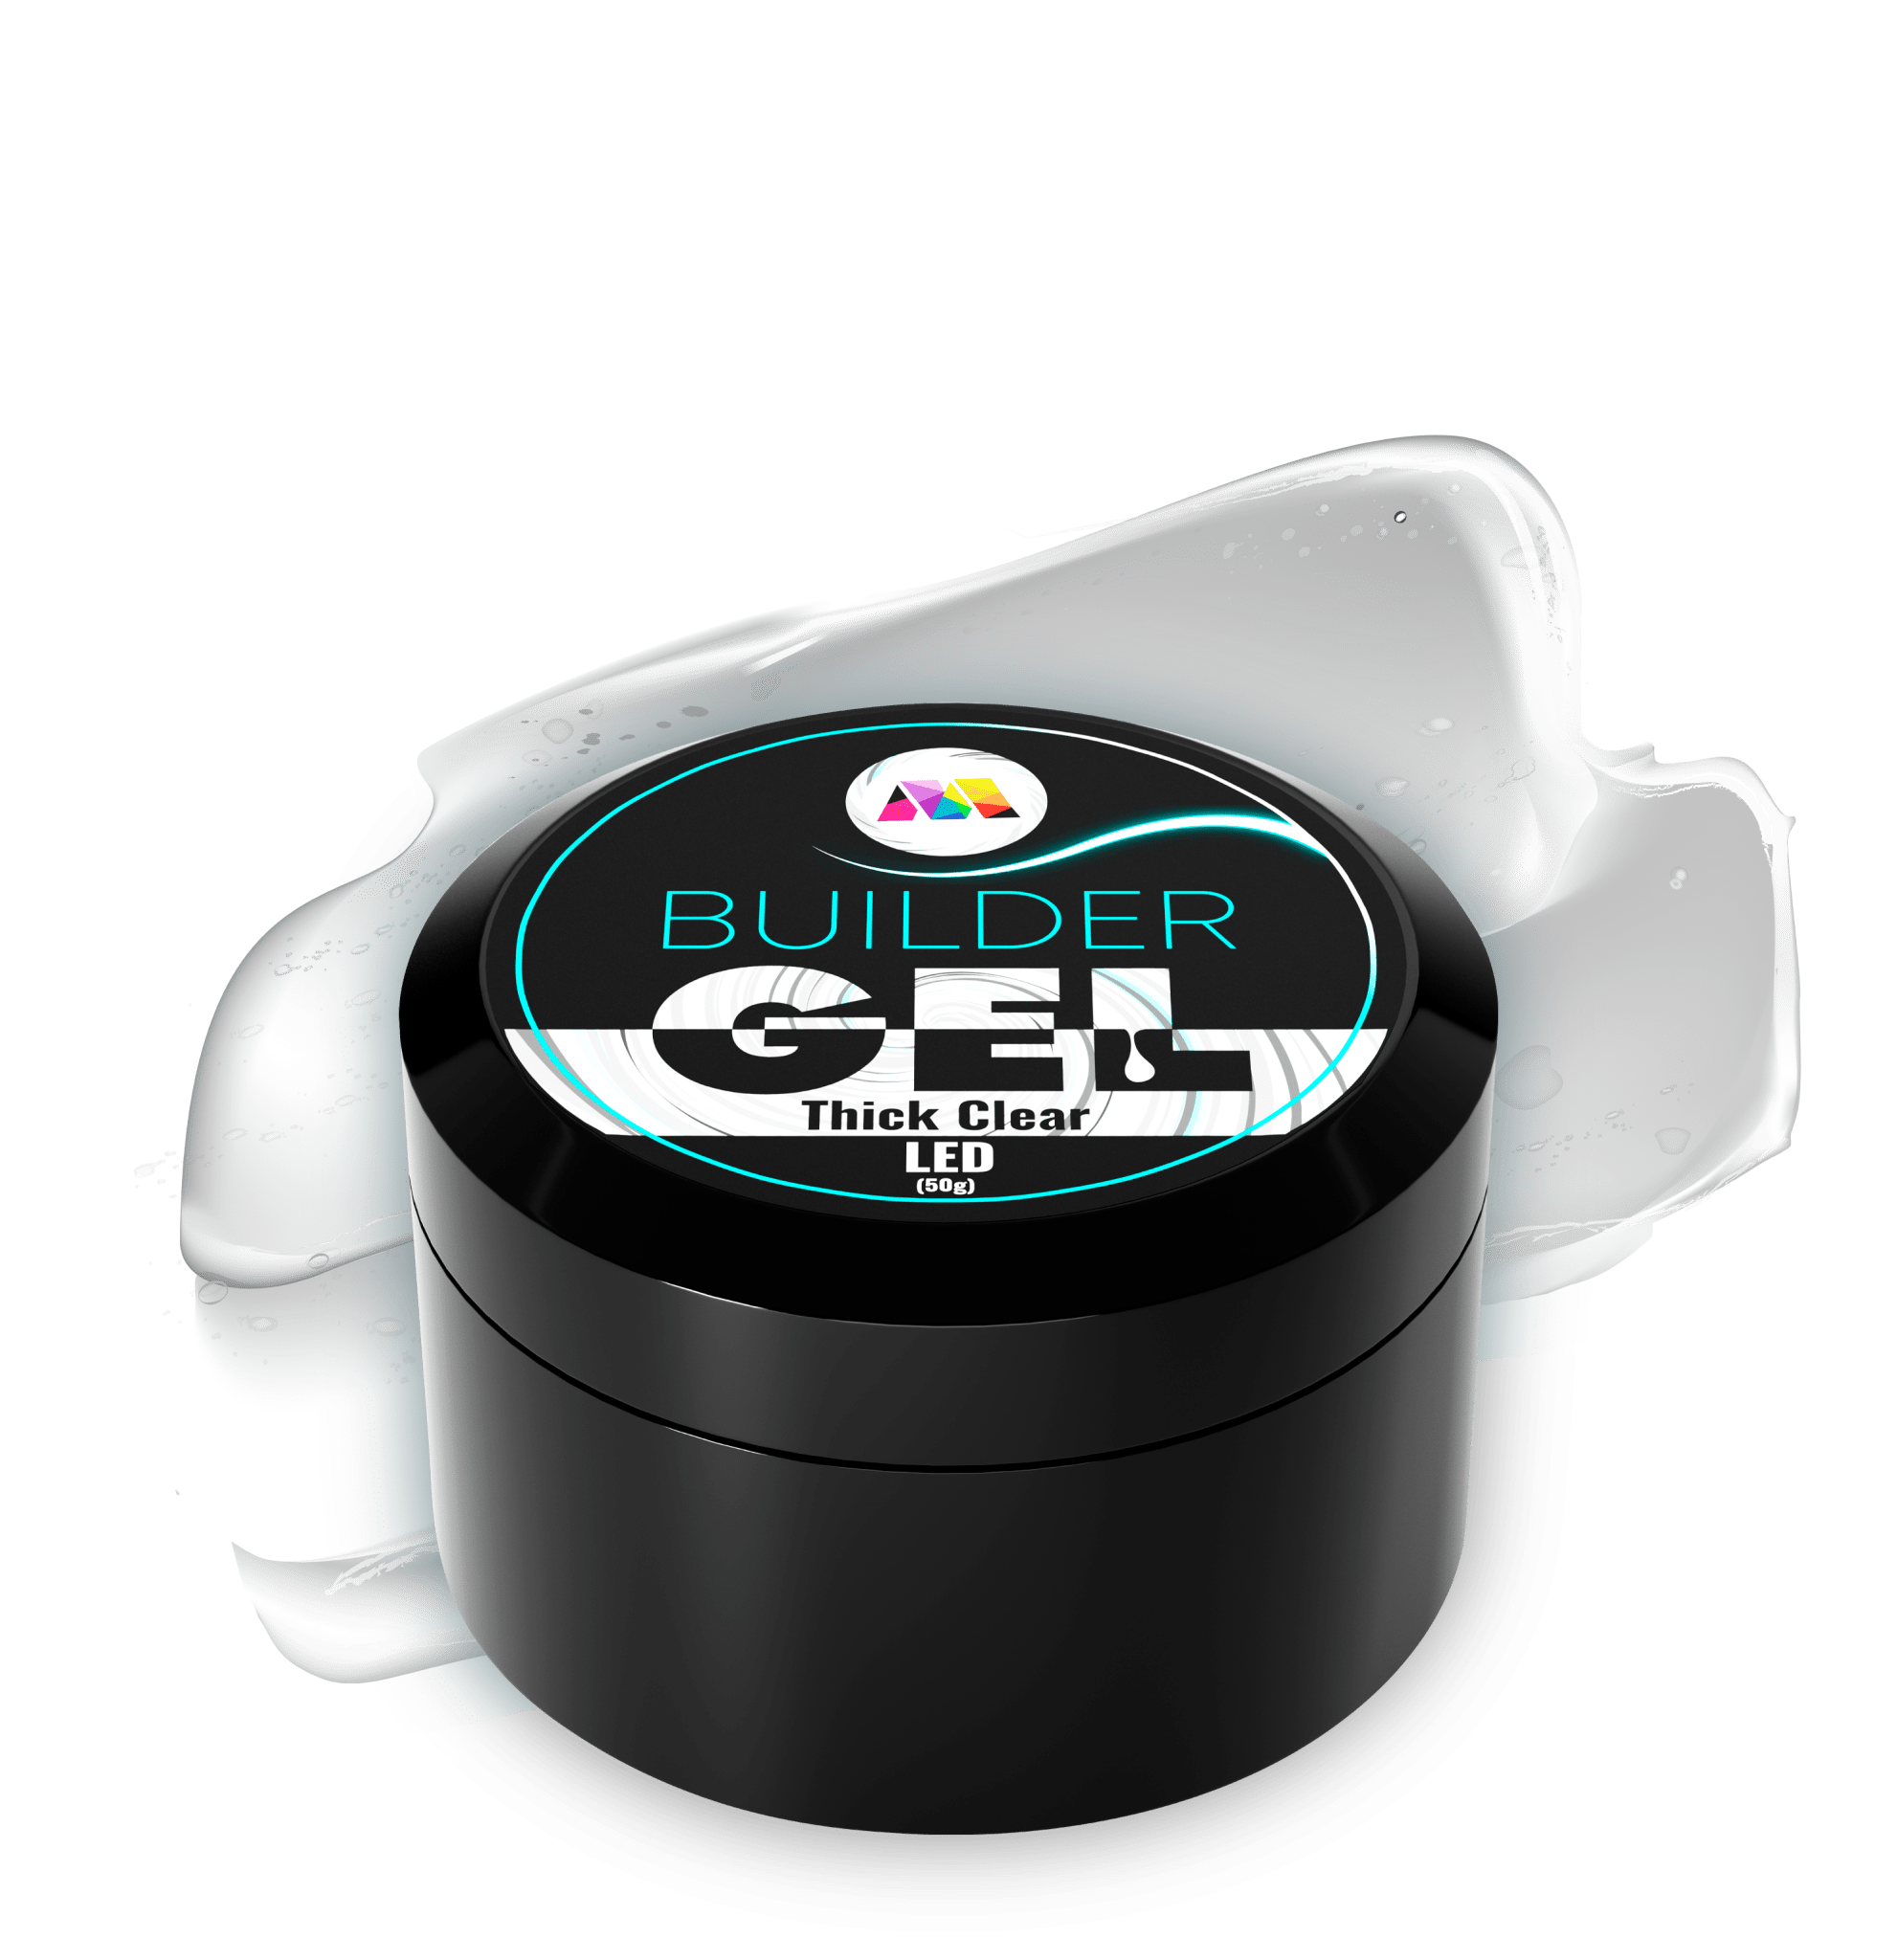 Thick Clear LED Builder Gel - 15g - Maskscara